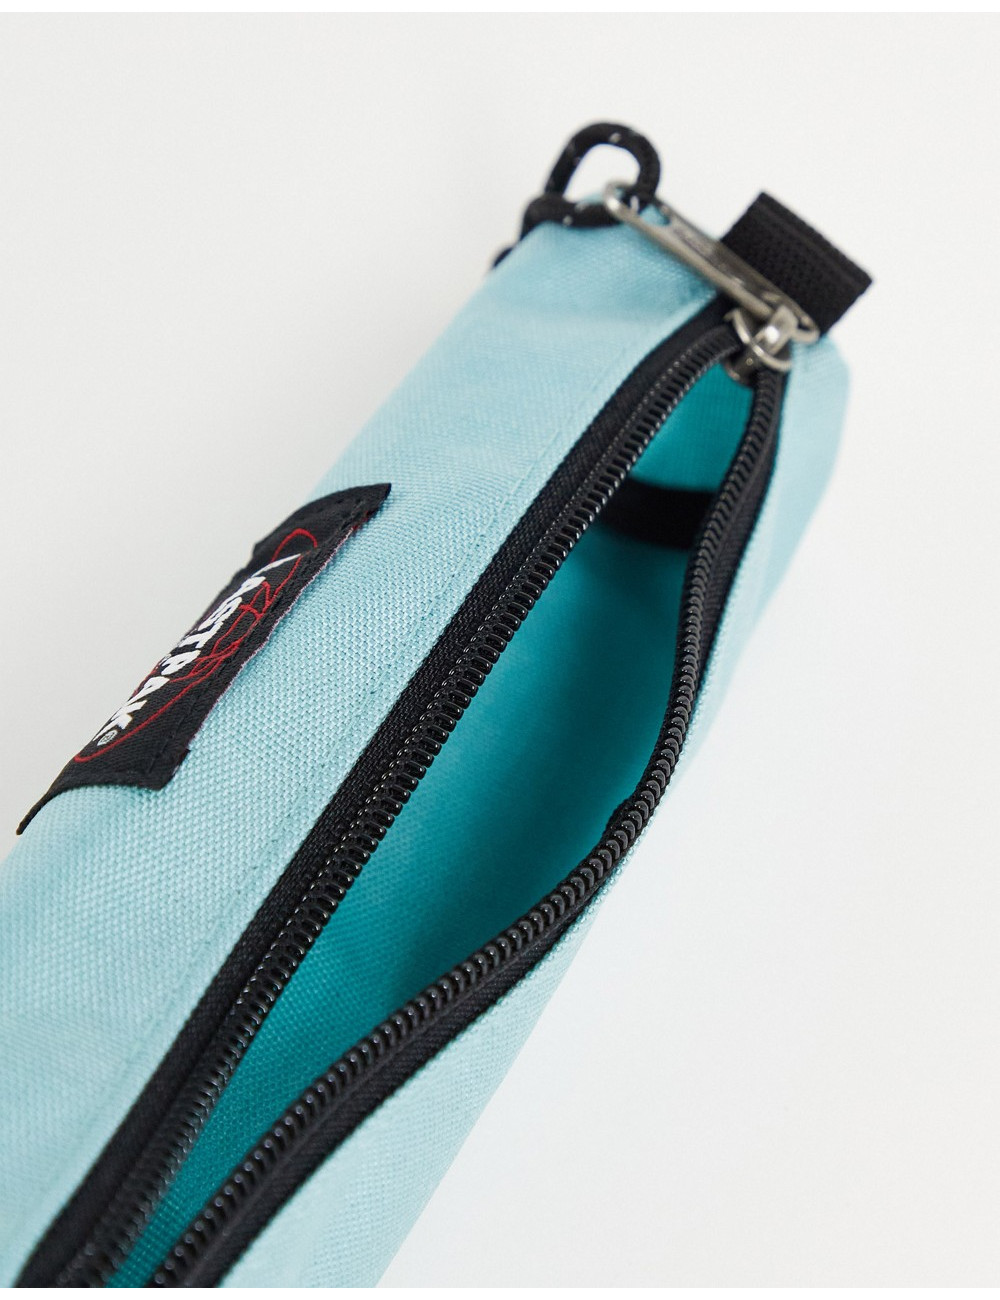 Eastpak pen pouch in blue